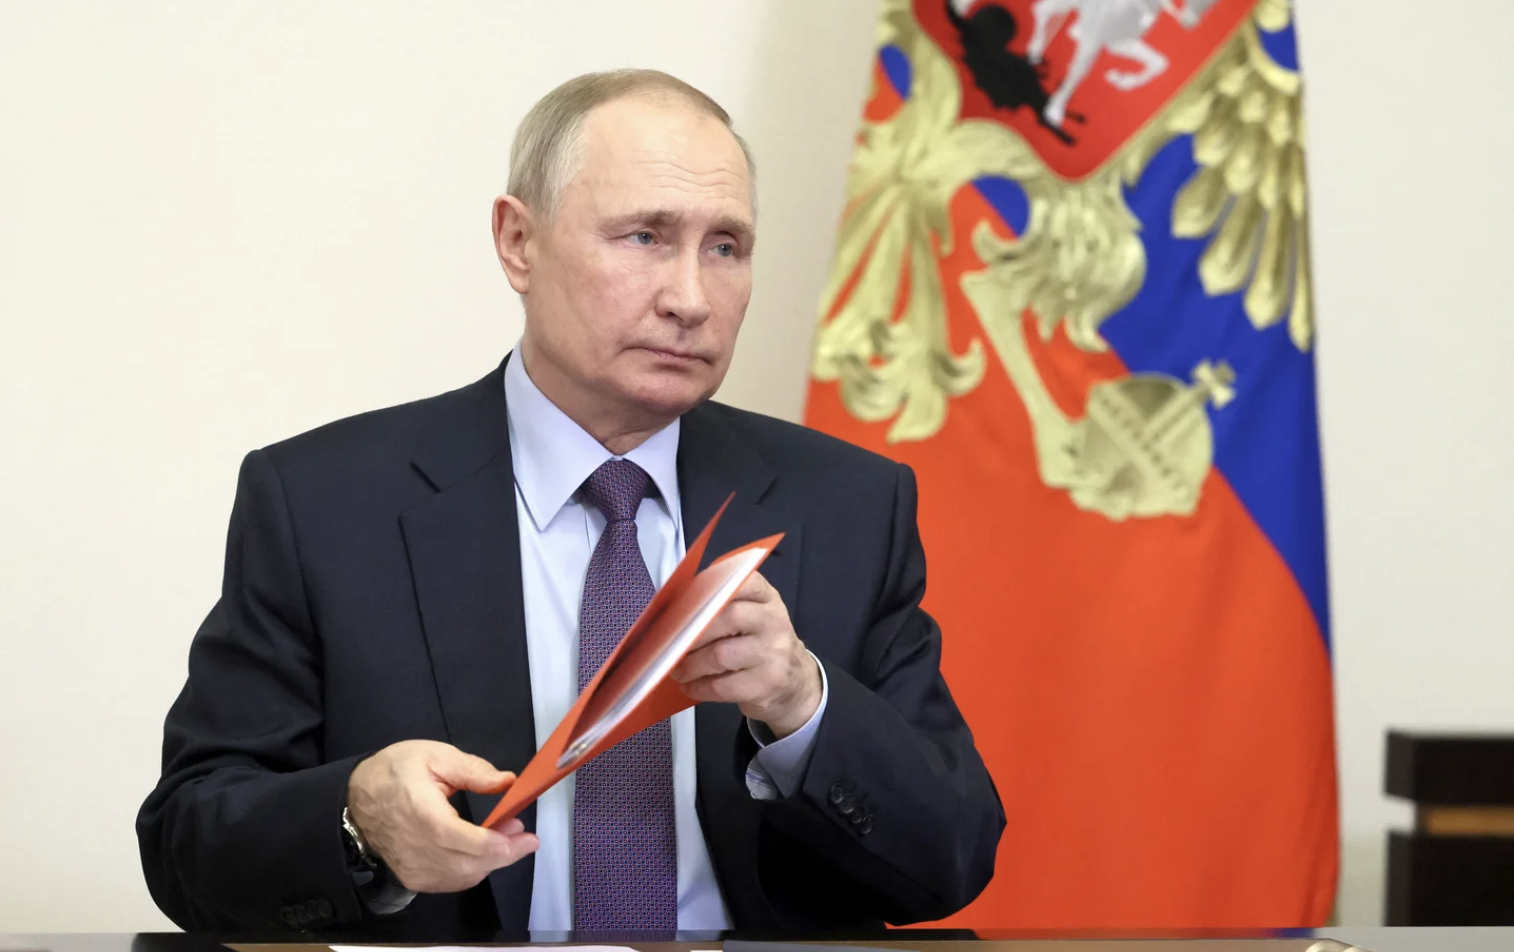 Rusia anunció que Vladimir Putin planea visitar los territorios ocupados de la región ucraniana de Donbas: “A su debido tiempo”